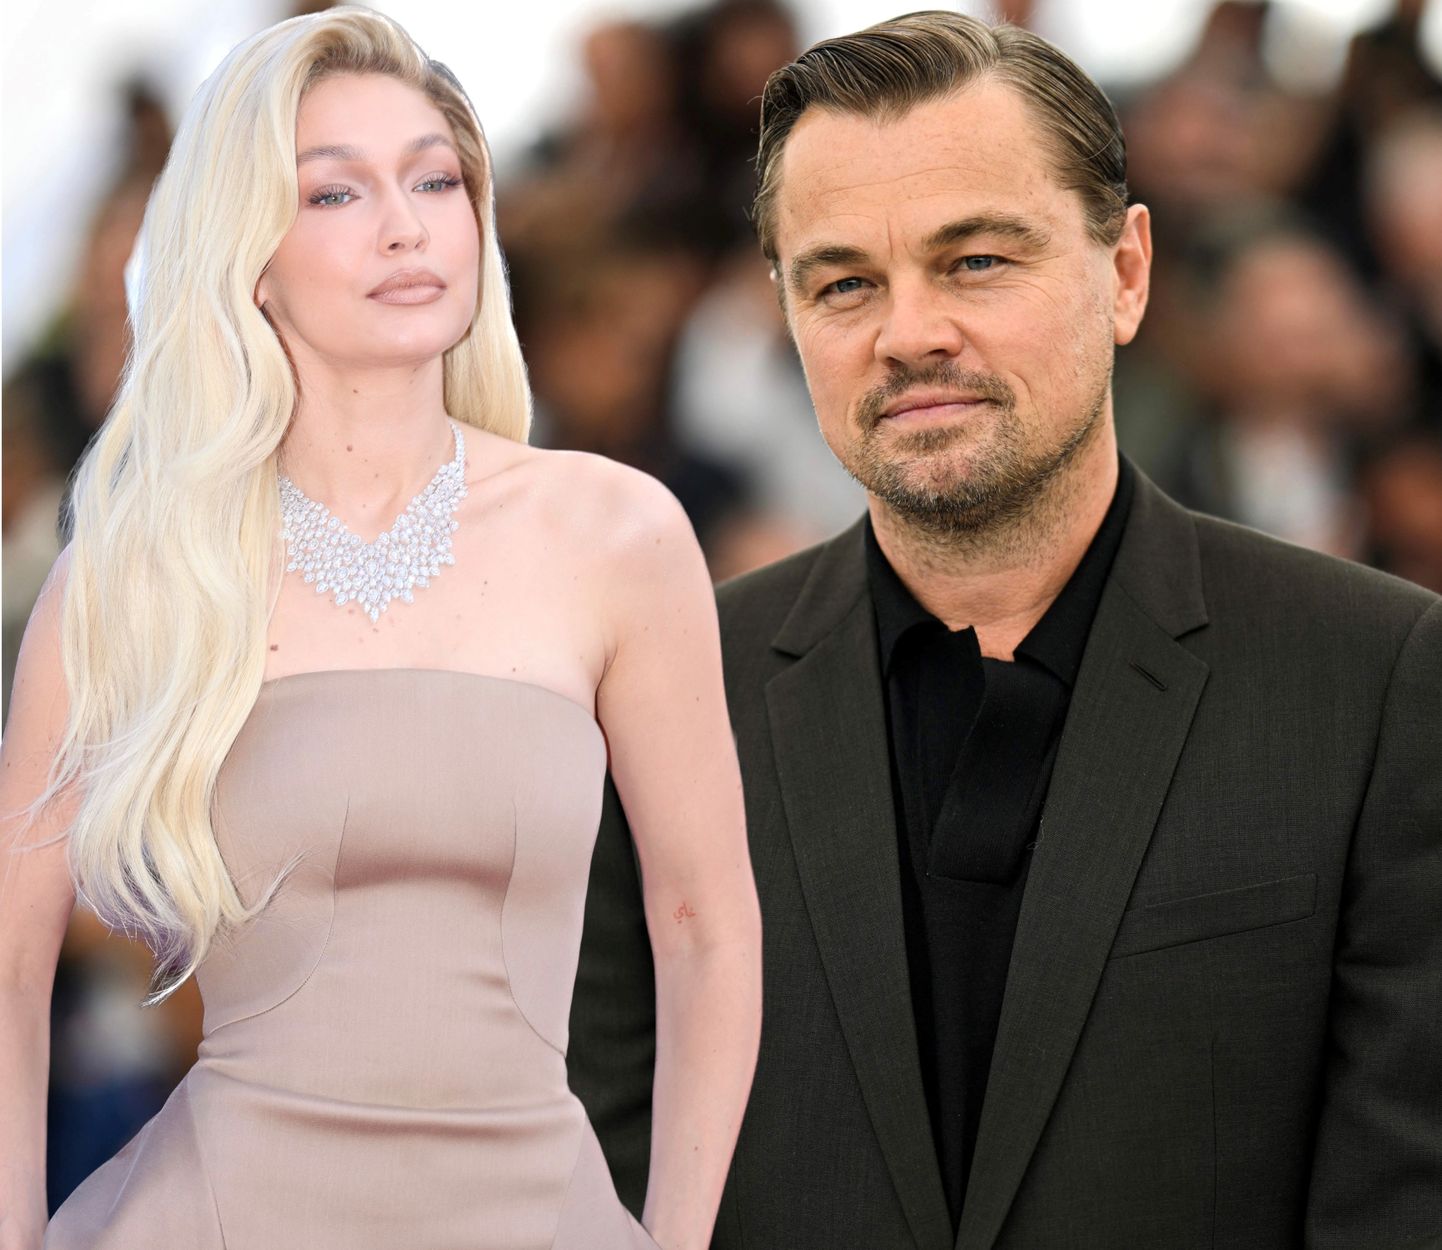 Kõmumeedia väidab taas, et Leonardo DiCaprio ja Gigi Hadid on suhtes